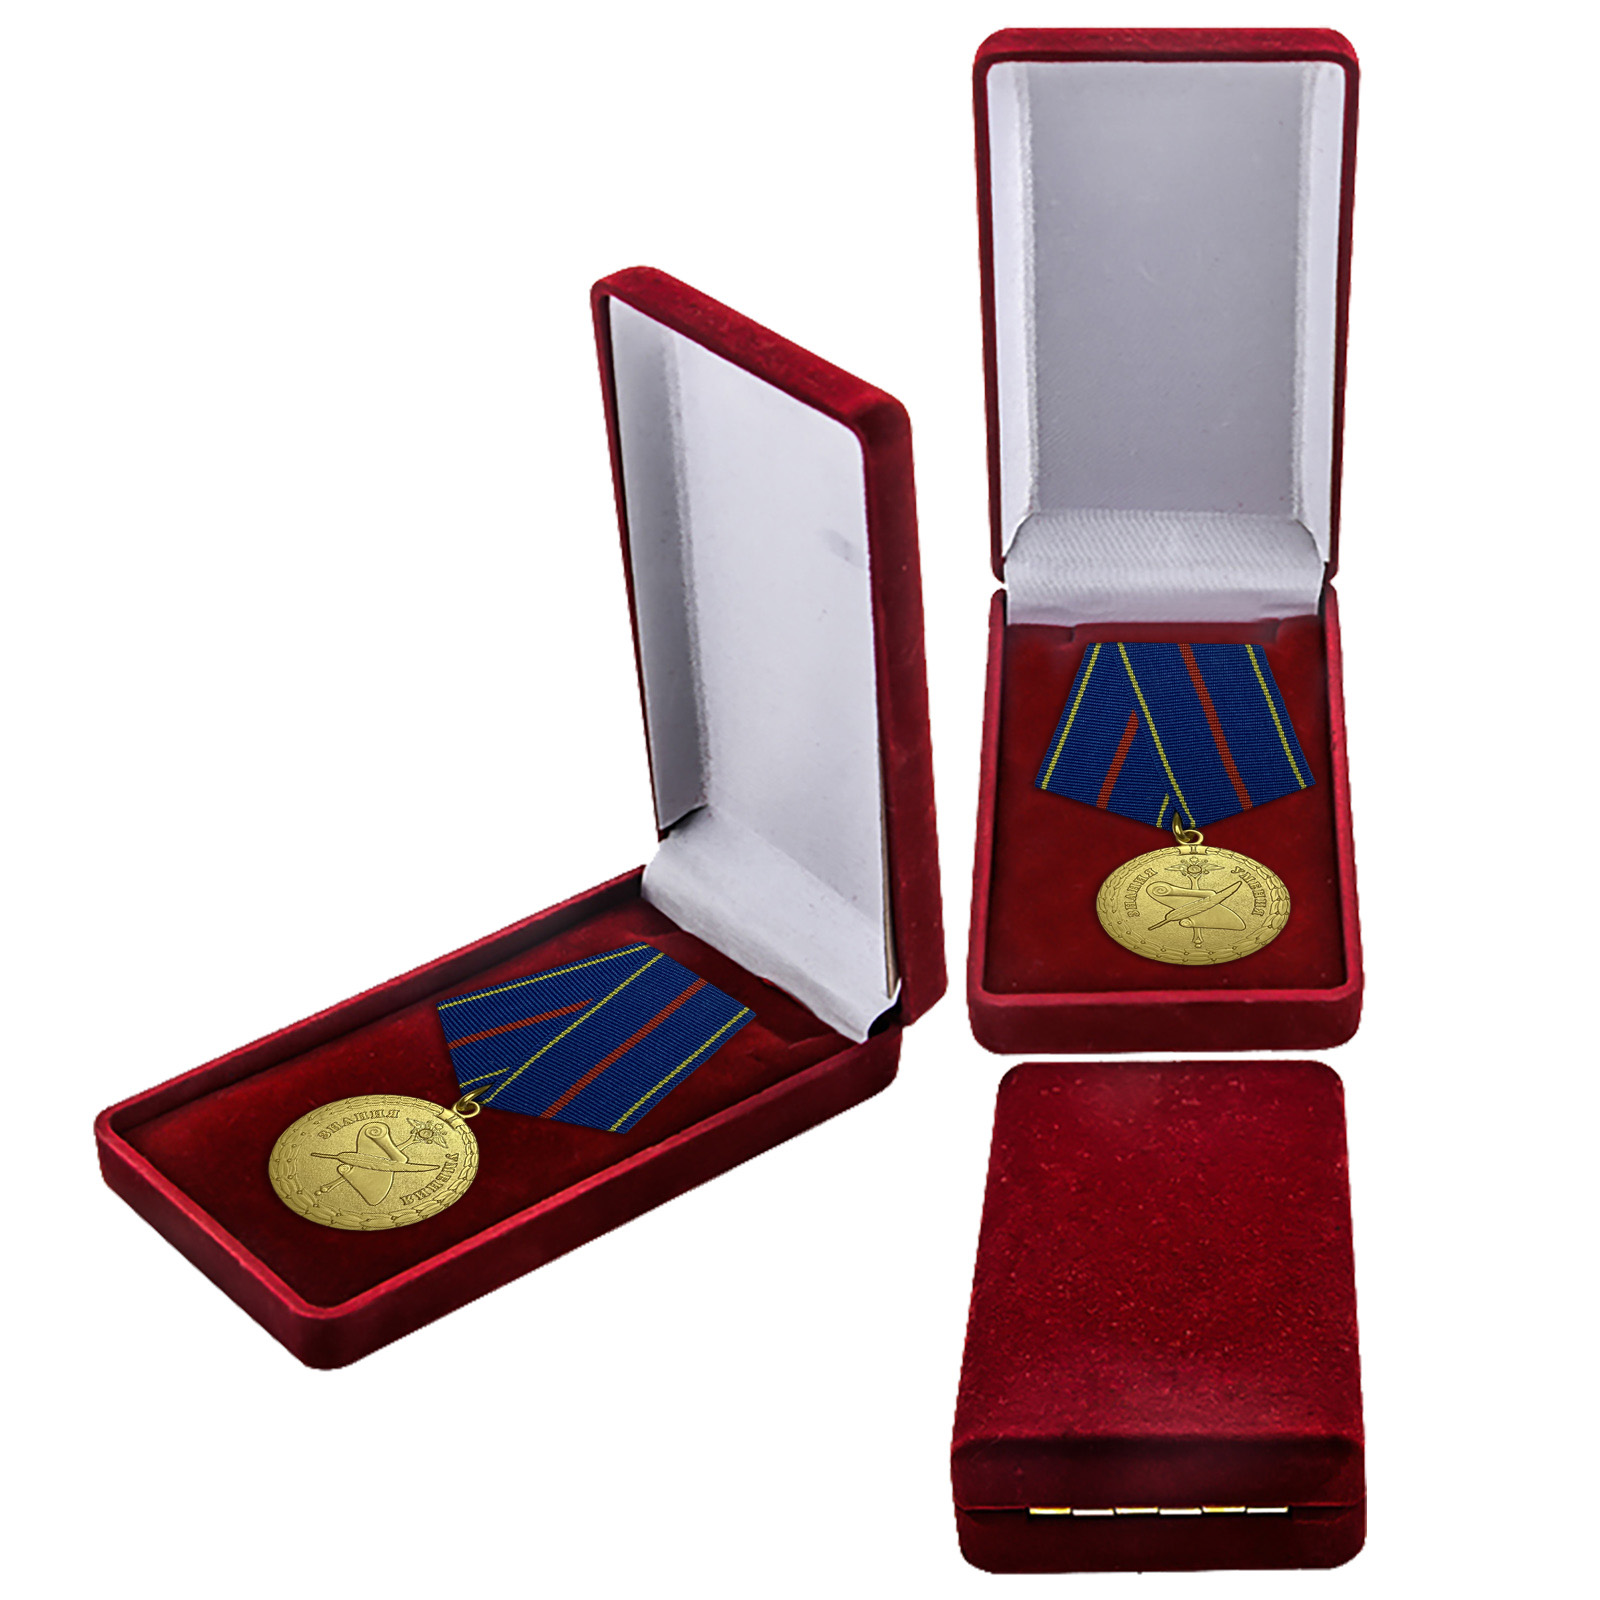 Купить латунную медаль За заслуги в управленческой деятельности МВД РФ 1 степени с доставкой